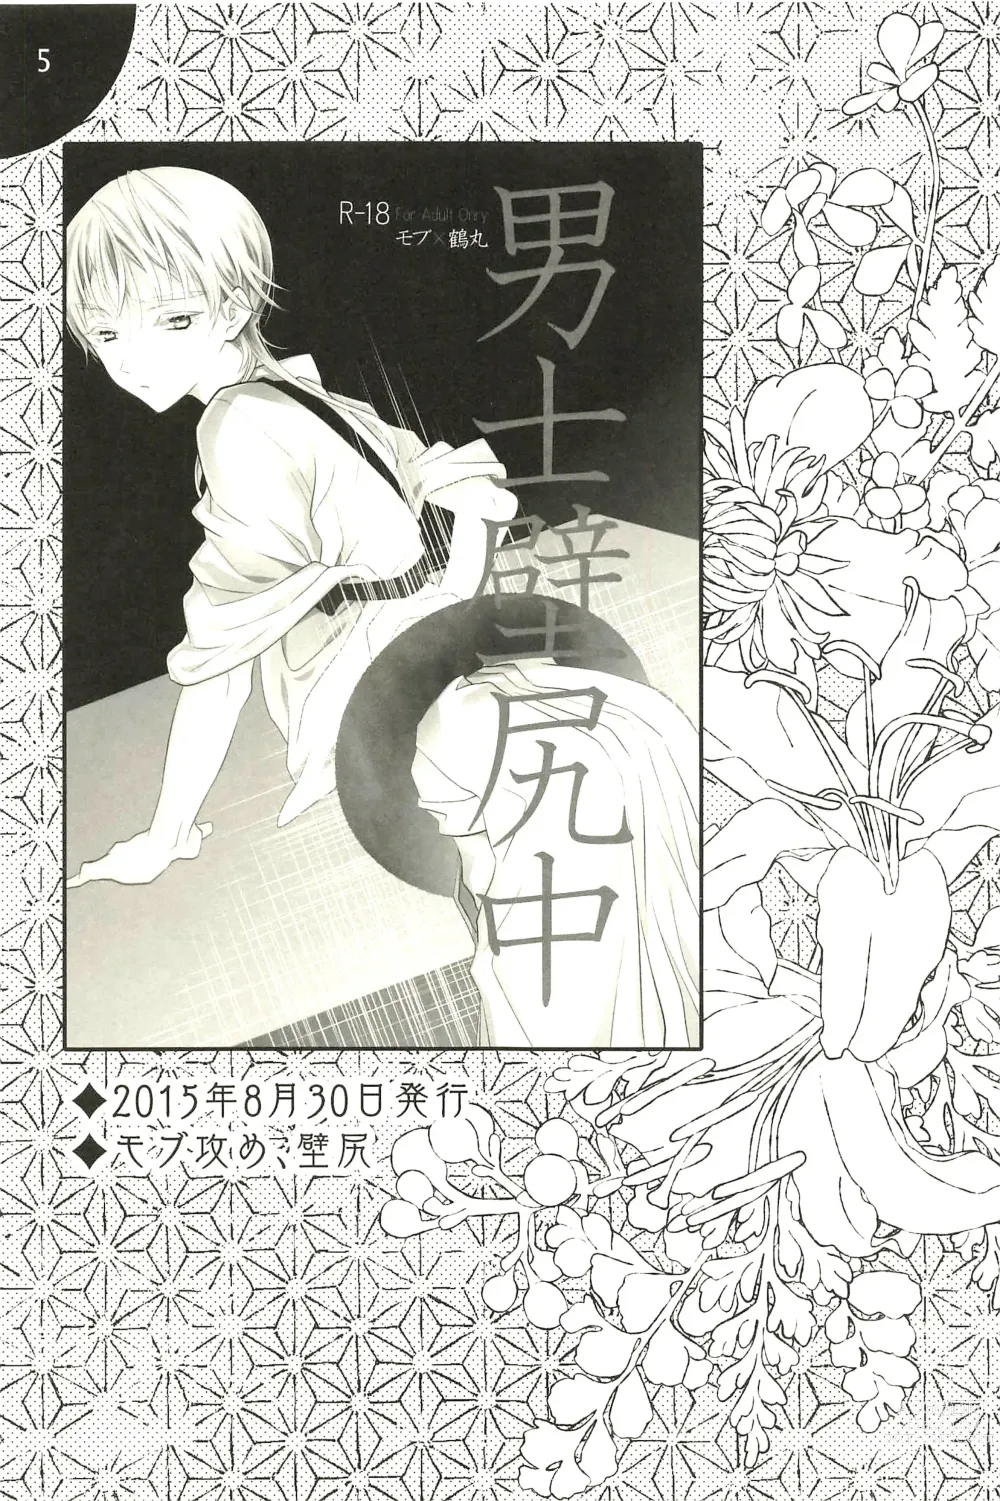 Page 5 of doujinshi Iromono Shu